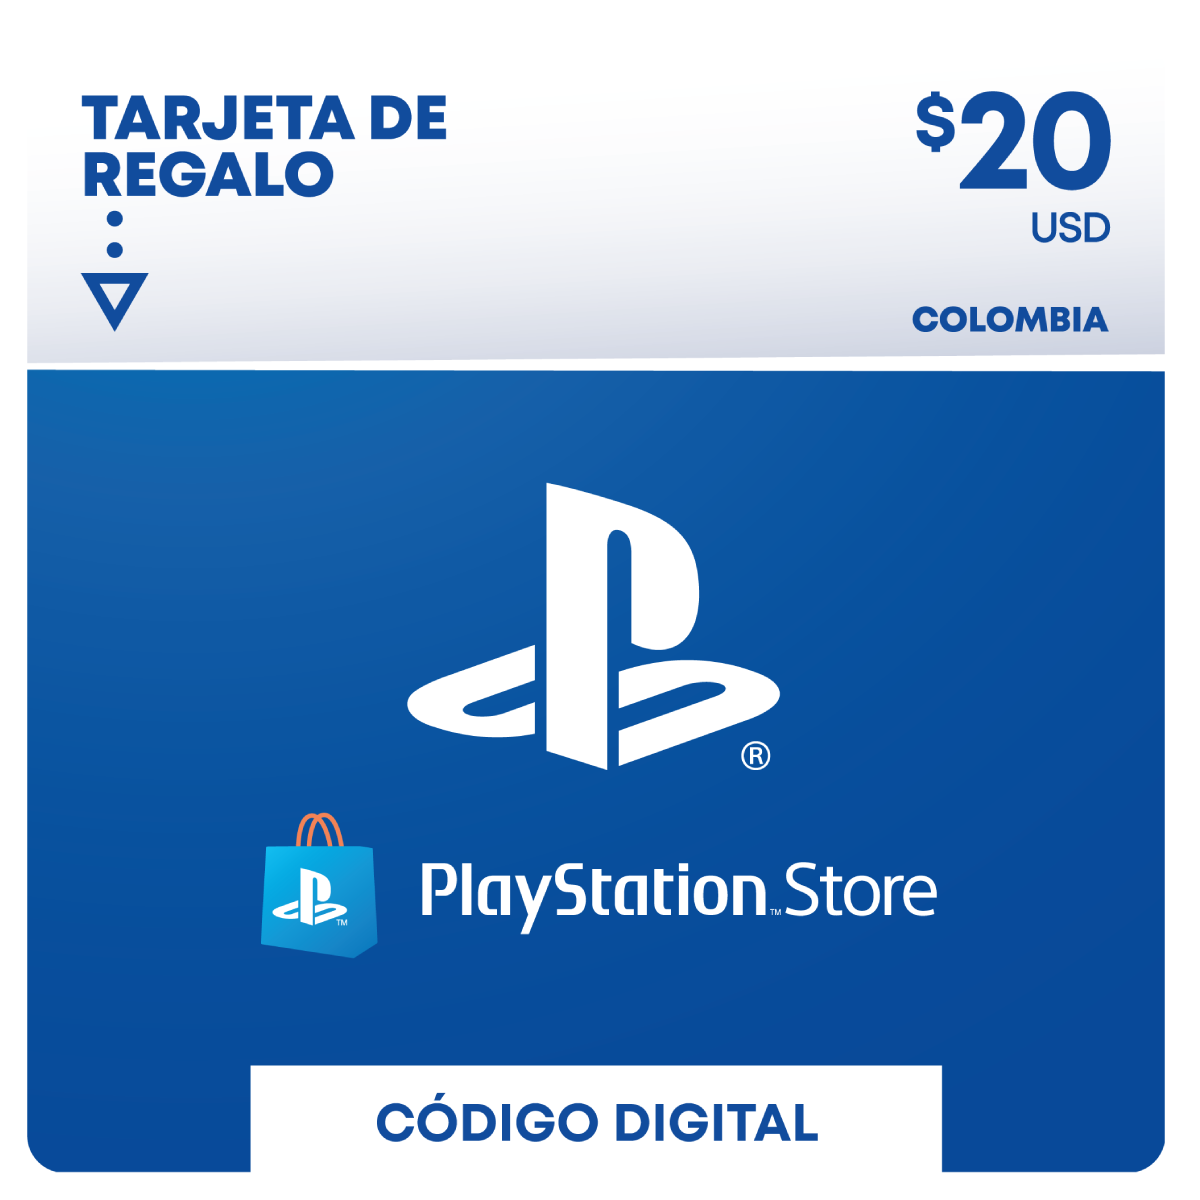 PlayStation $20 USD